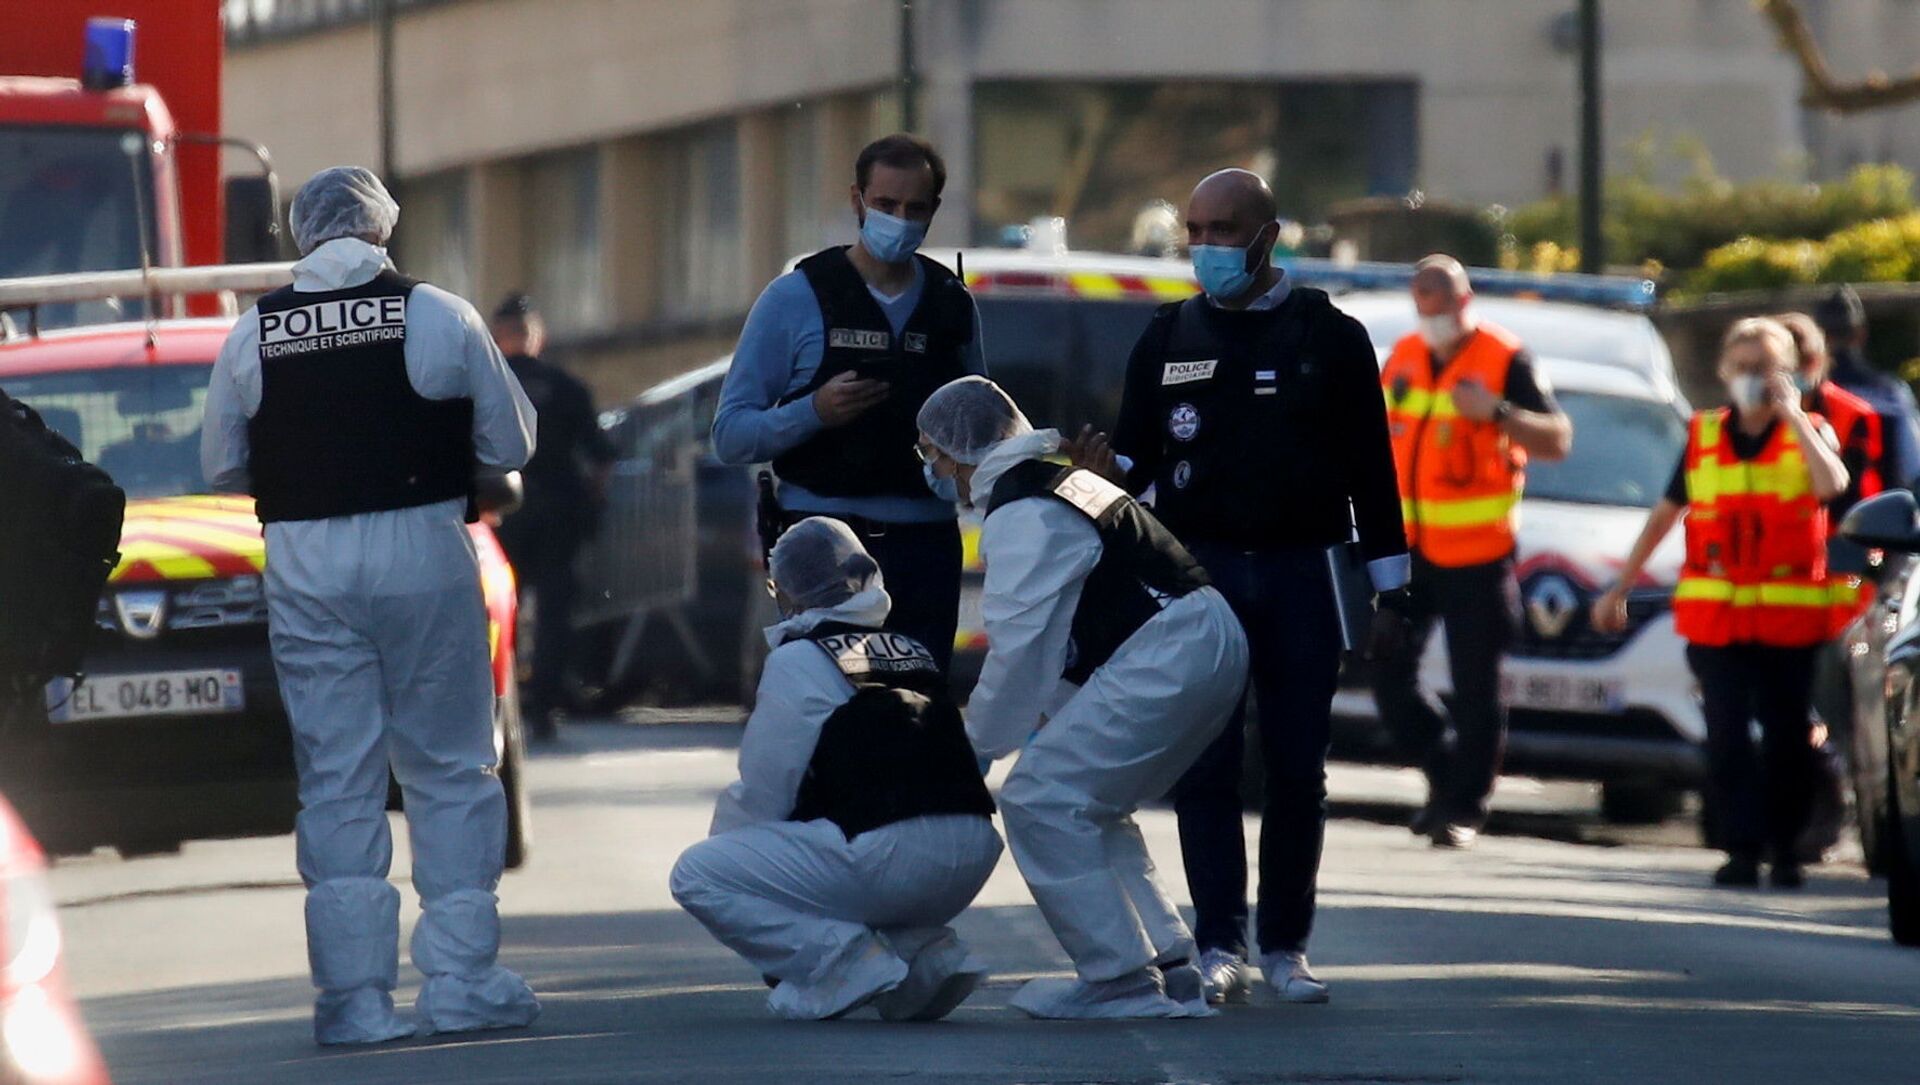 Policiers à Rambouillet après l'attaque au couteau, 23 avril 2021 - Sputnik Afrique, 1920, 24.04.2021